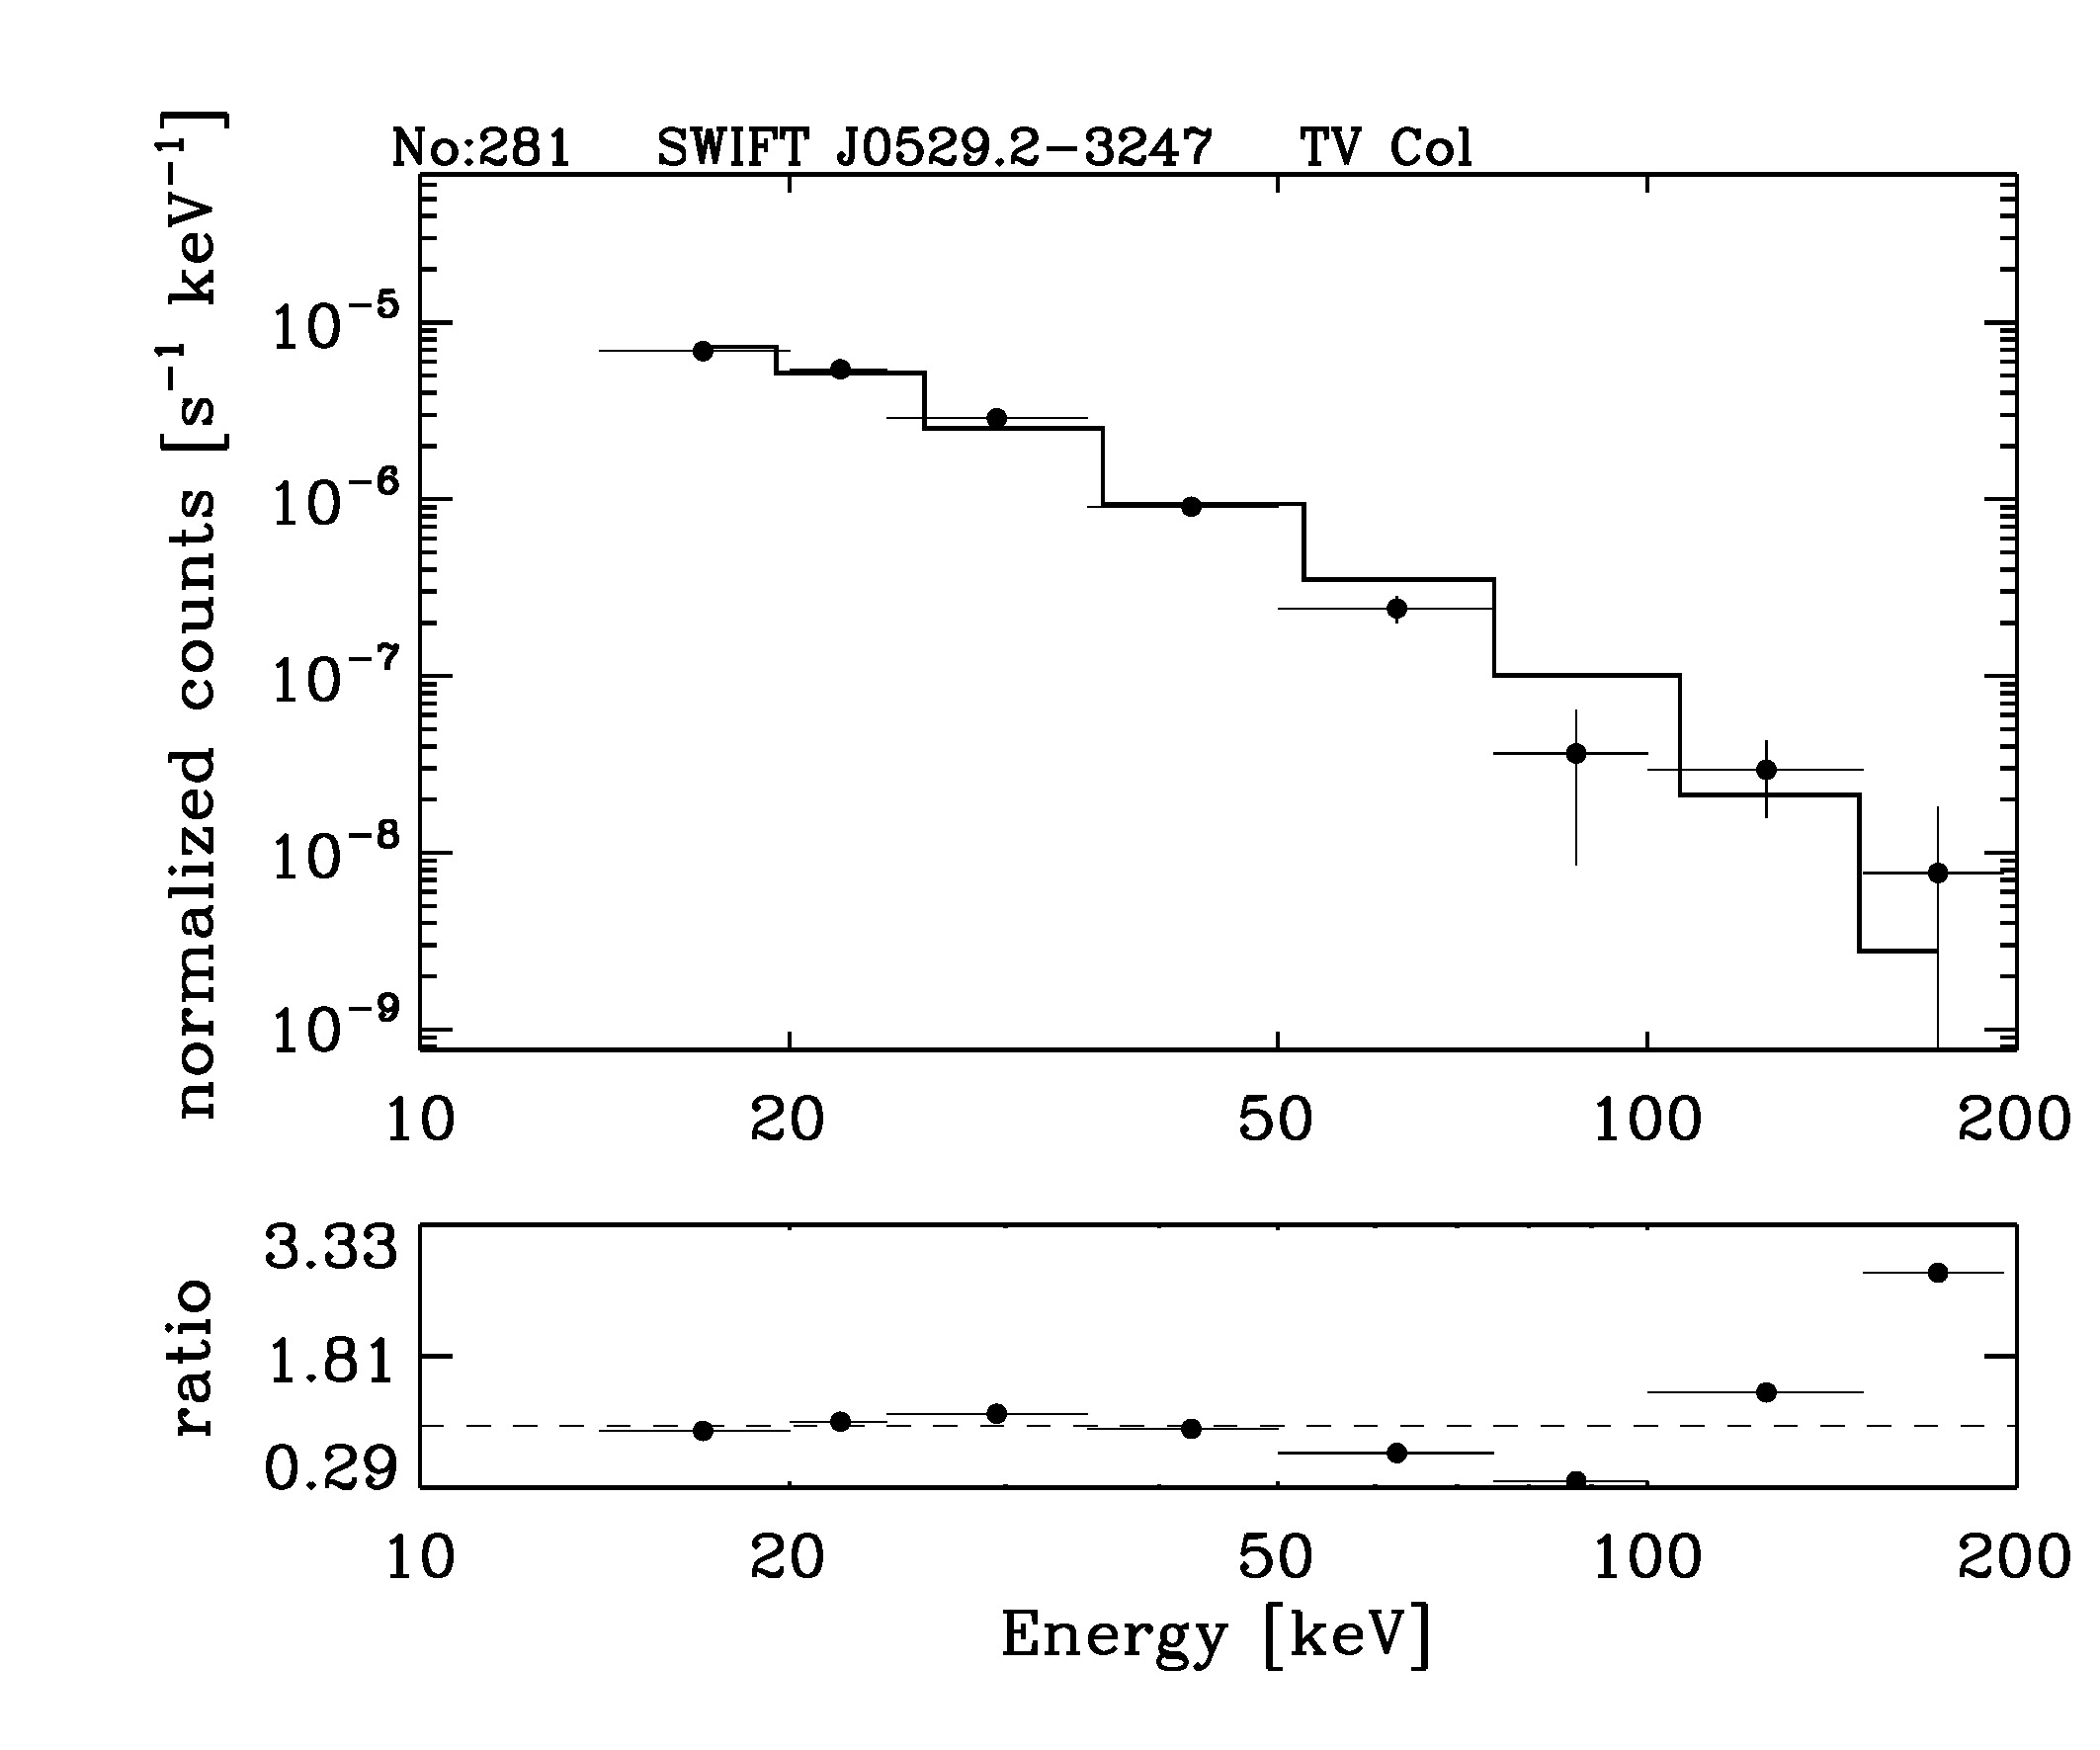 BAT Spectrum for SWIFT J0529.2-3247